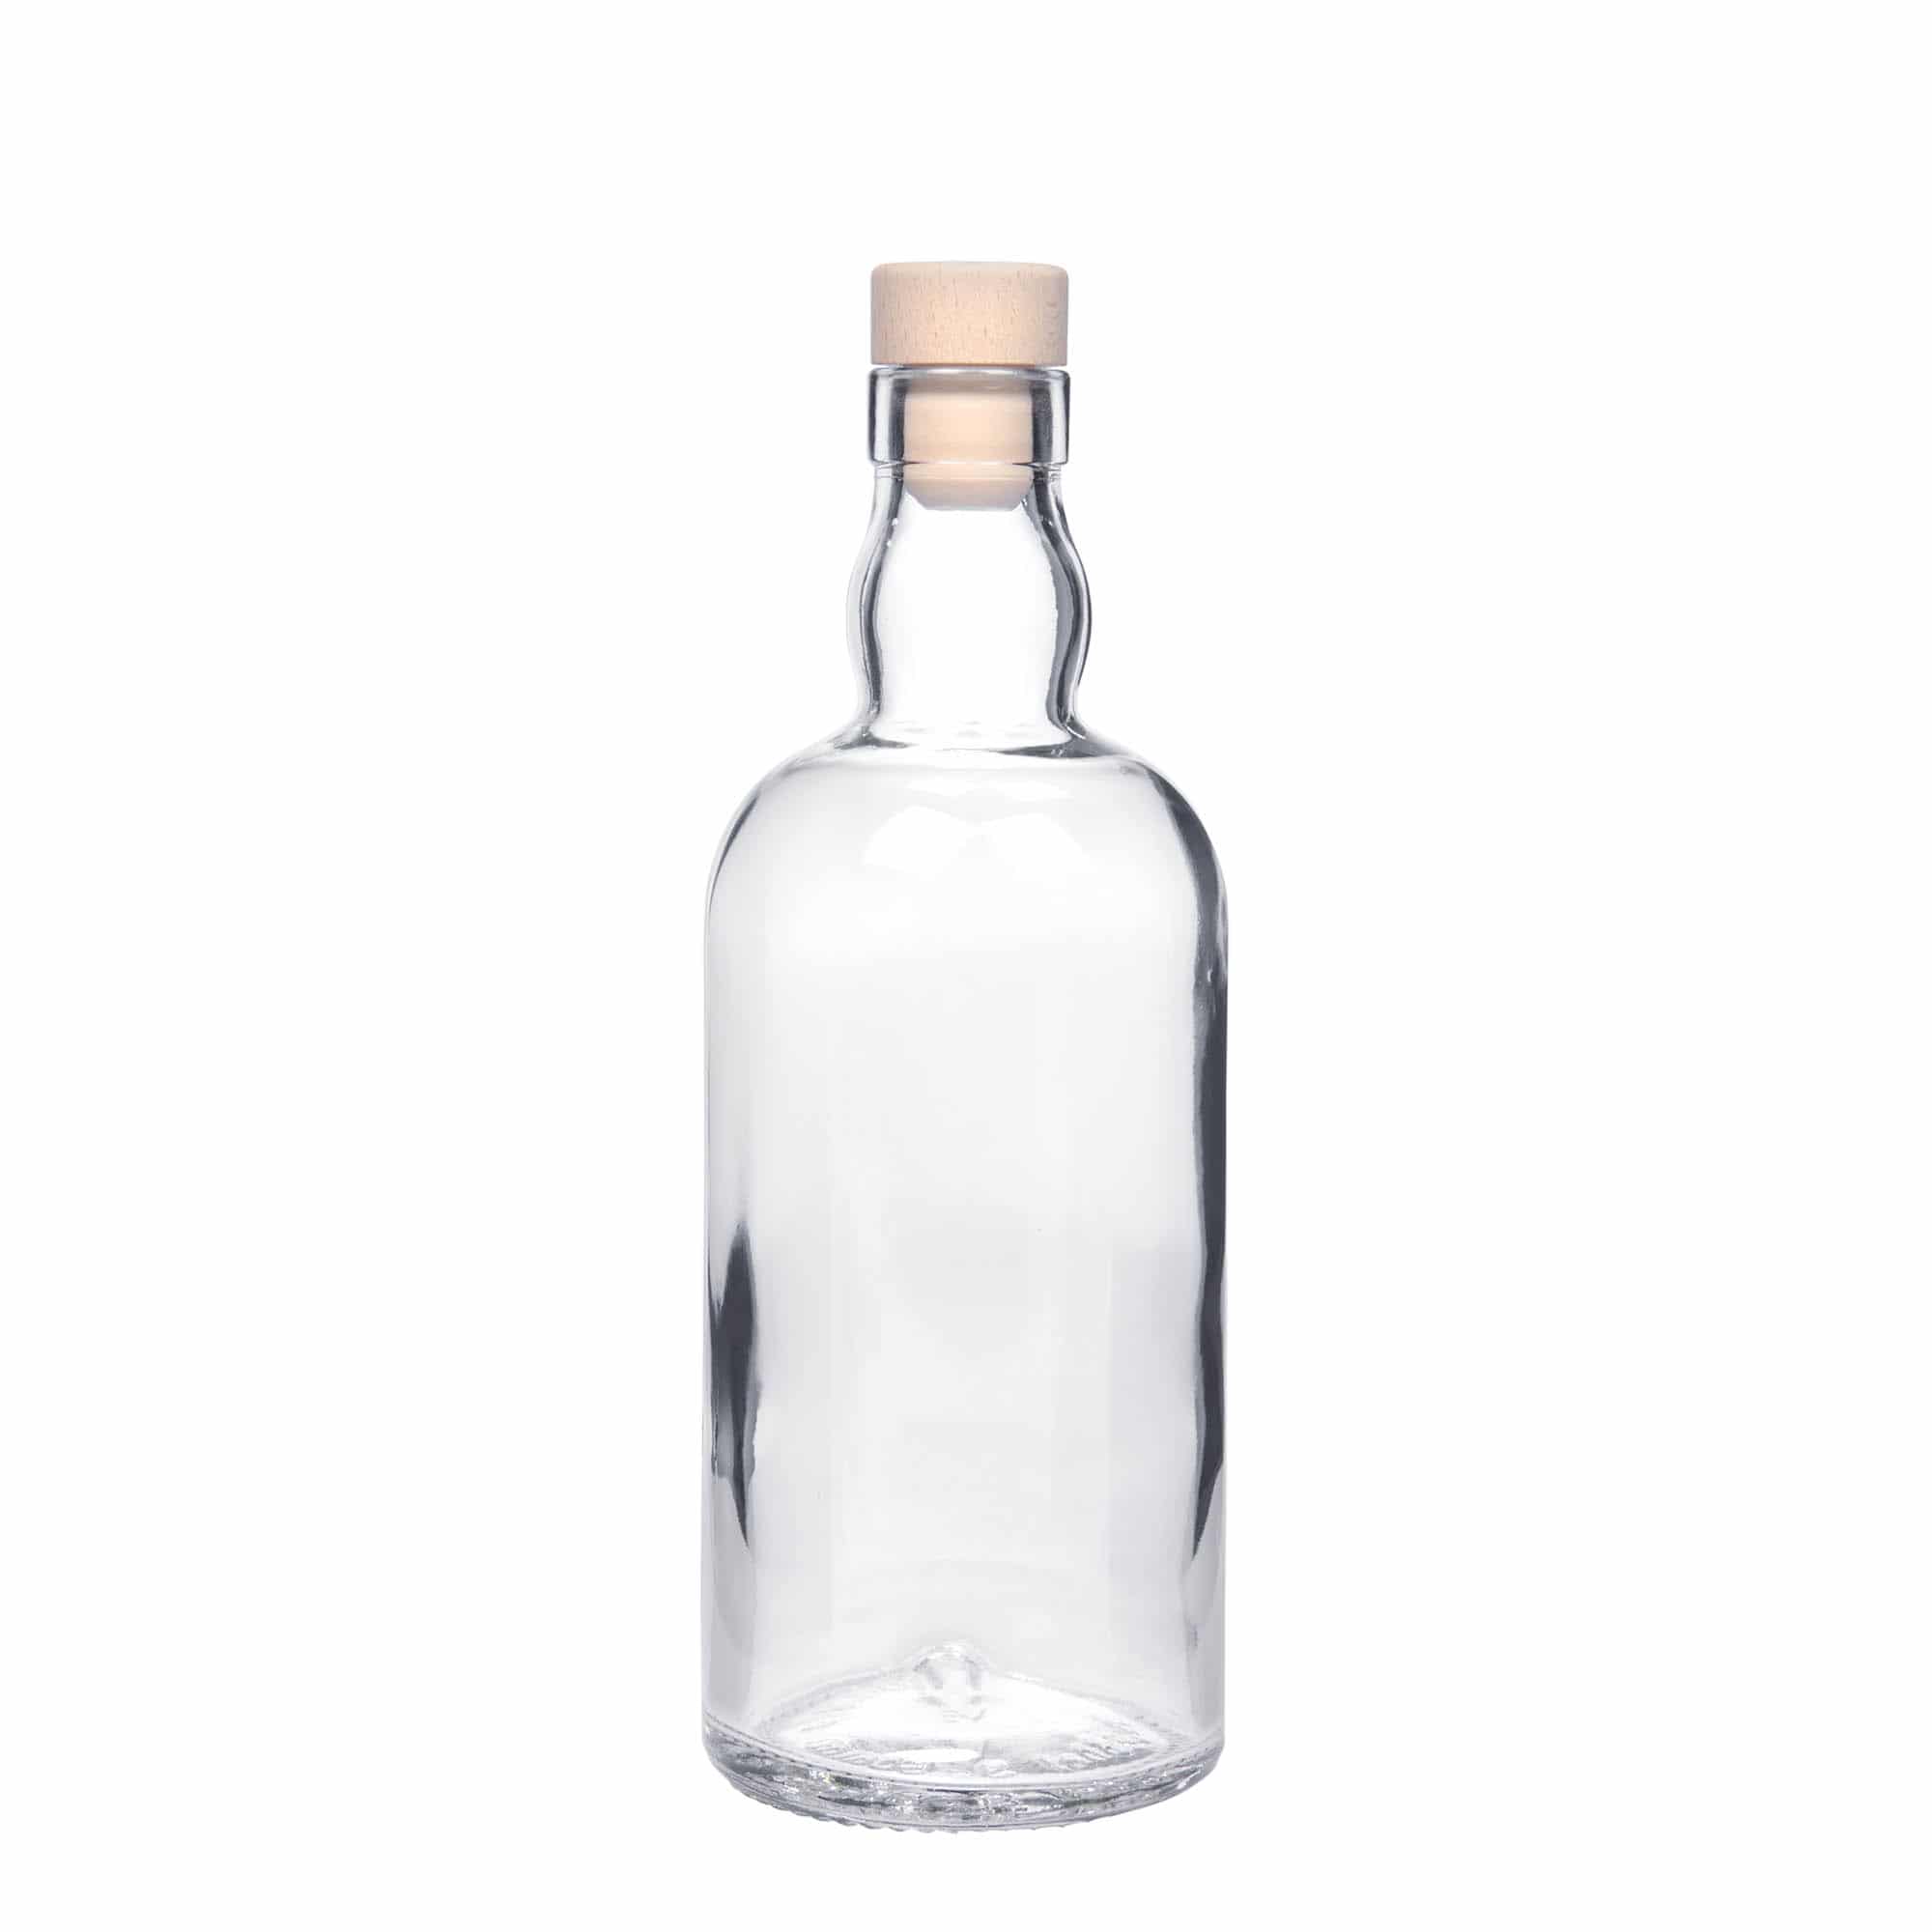 500 ml glass bottle 'Aberdeen', closure: cork